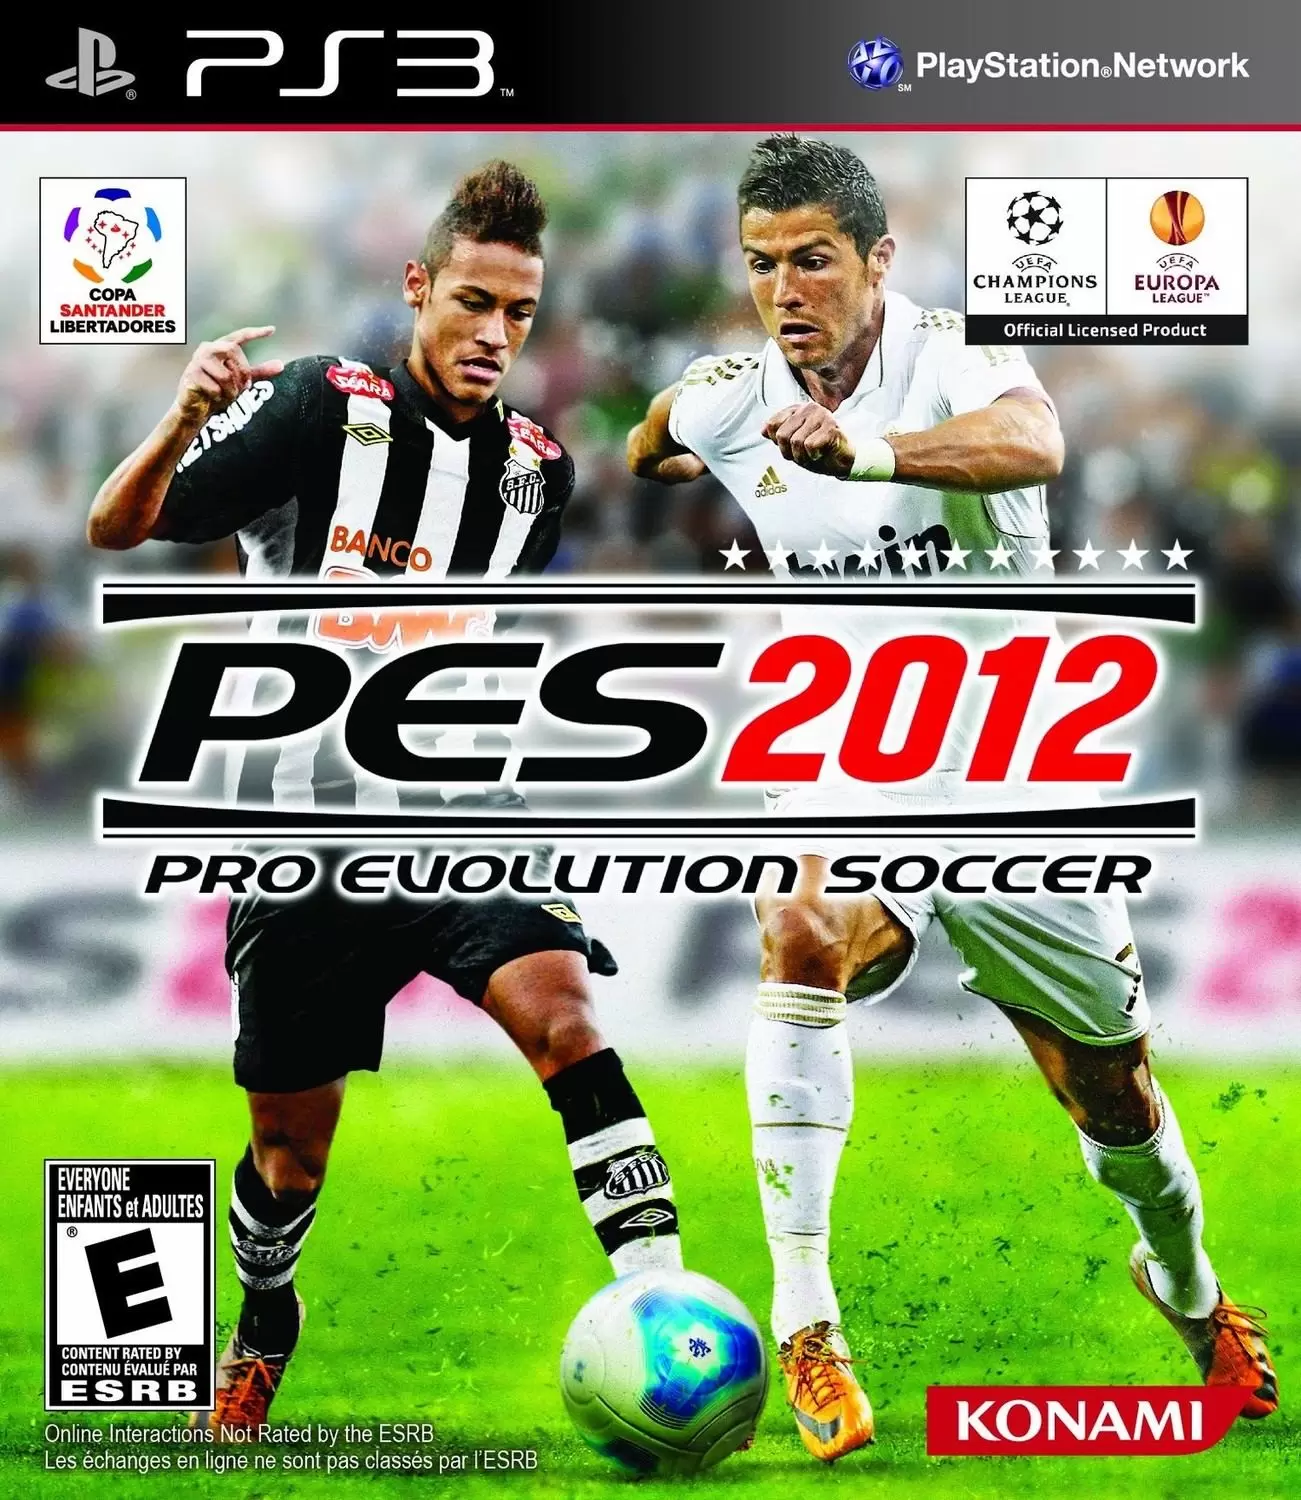 PS3 Games - Pro Evolution Soccer 2012